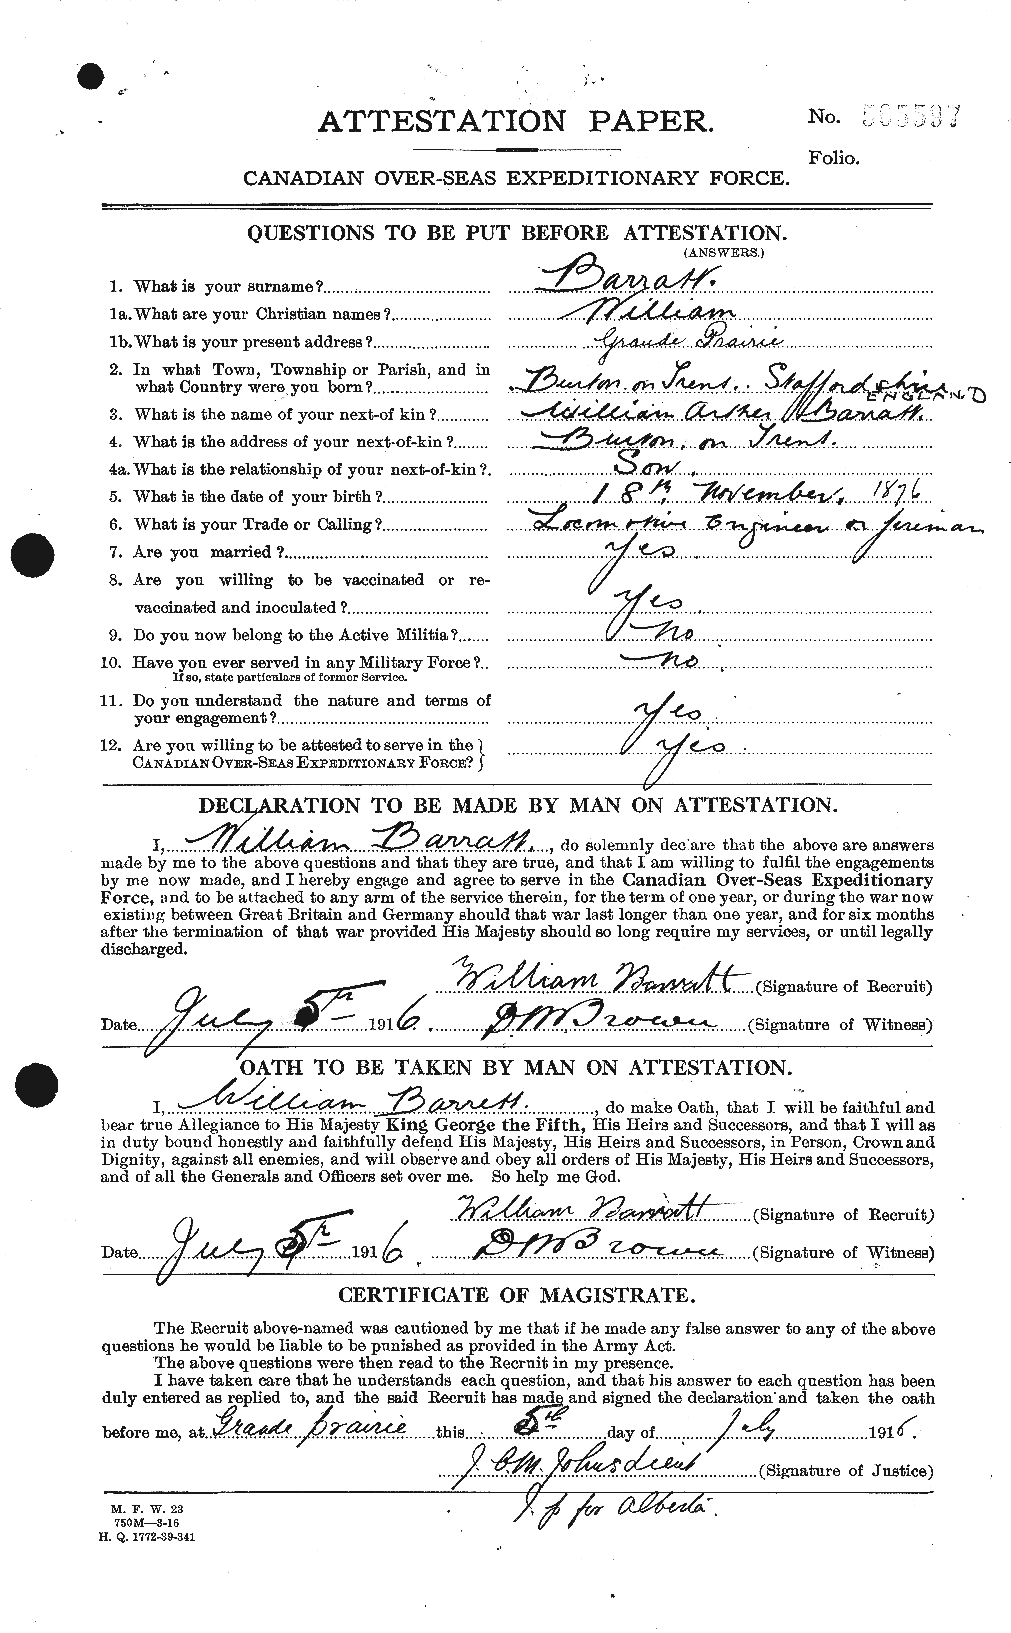 Dossiers du Personnel de la Première Guerre mondiale - CEC 221956a